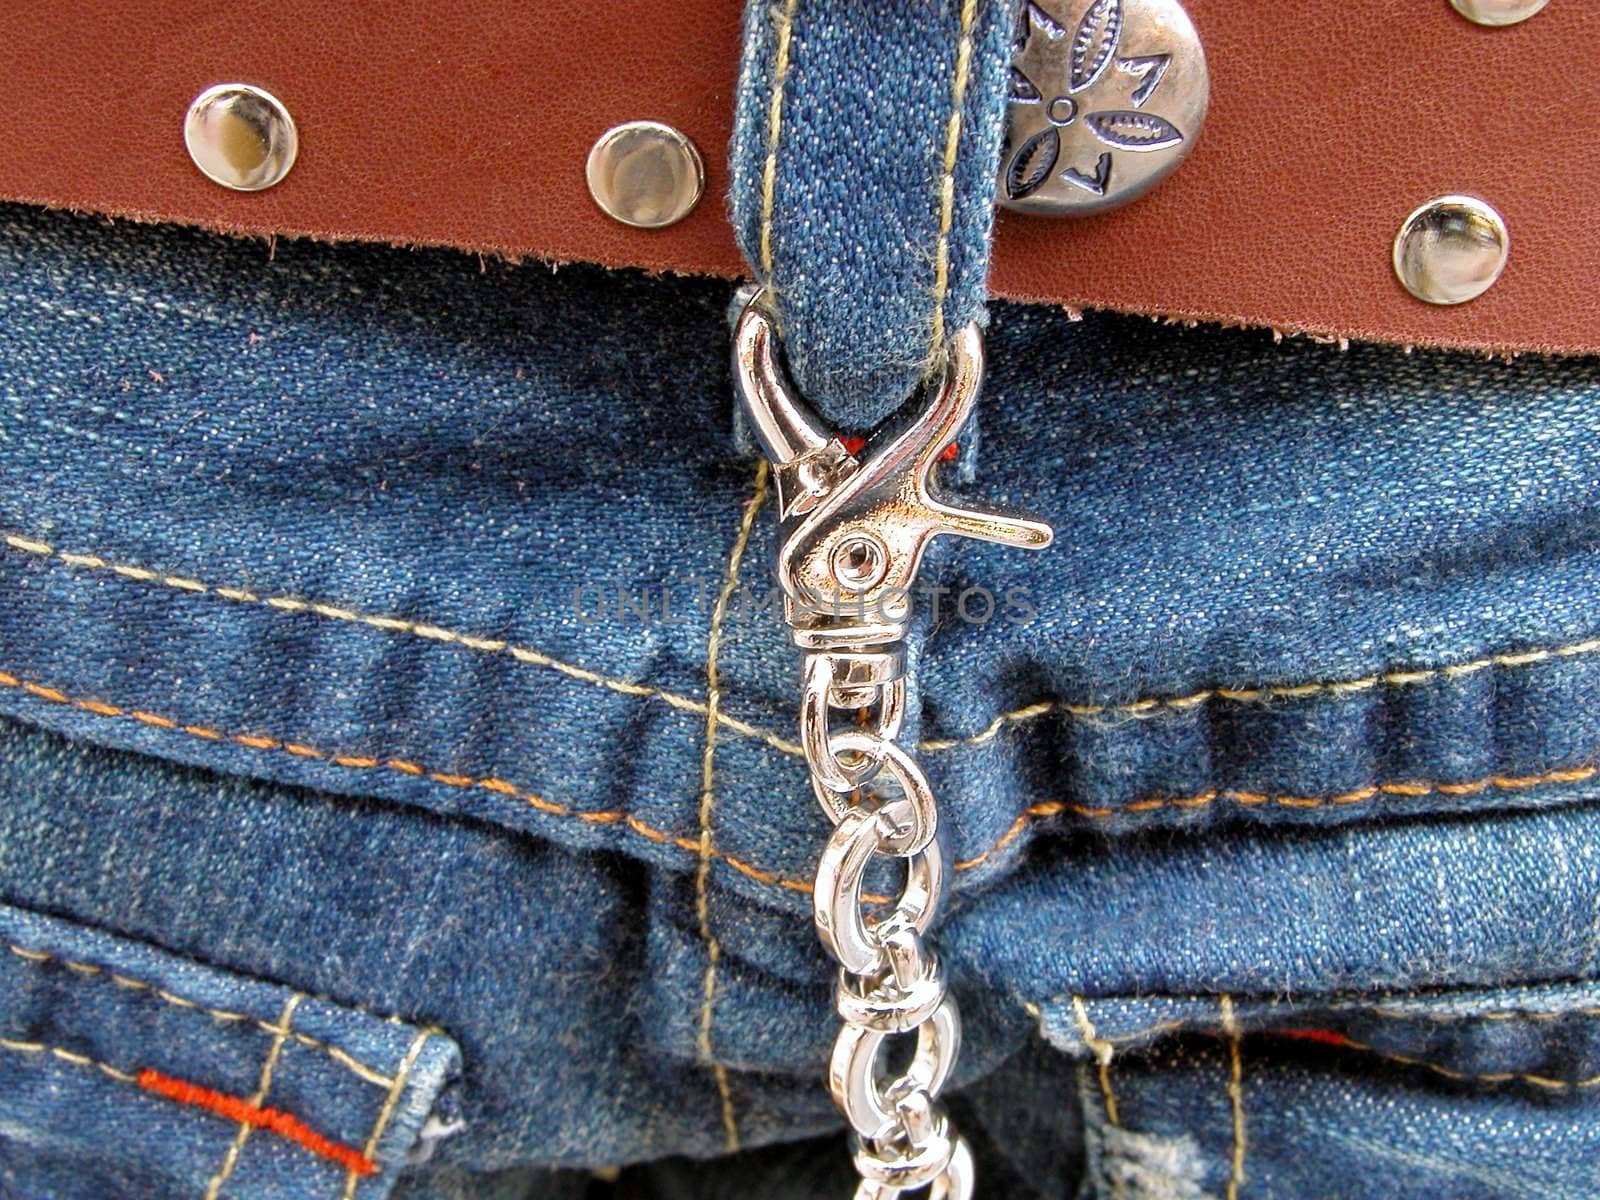  Blue jeans detail         